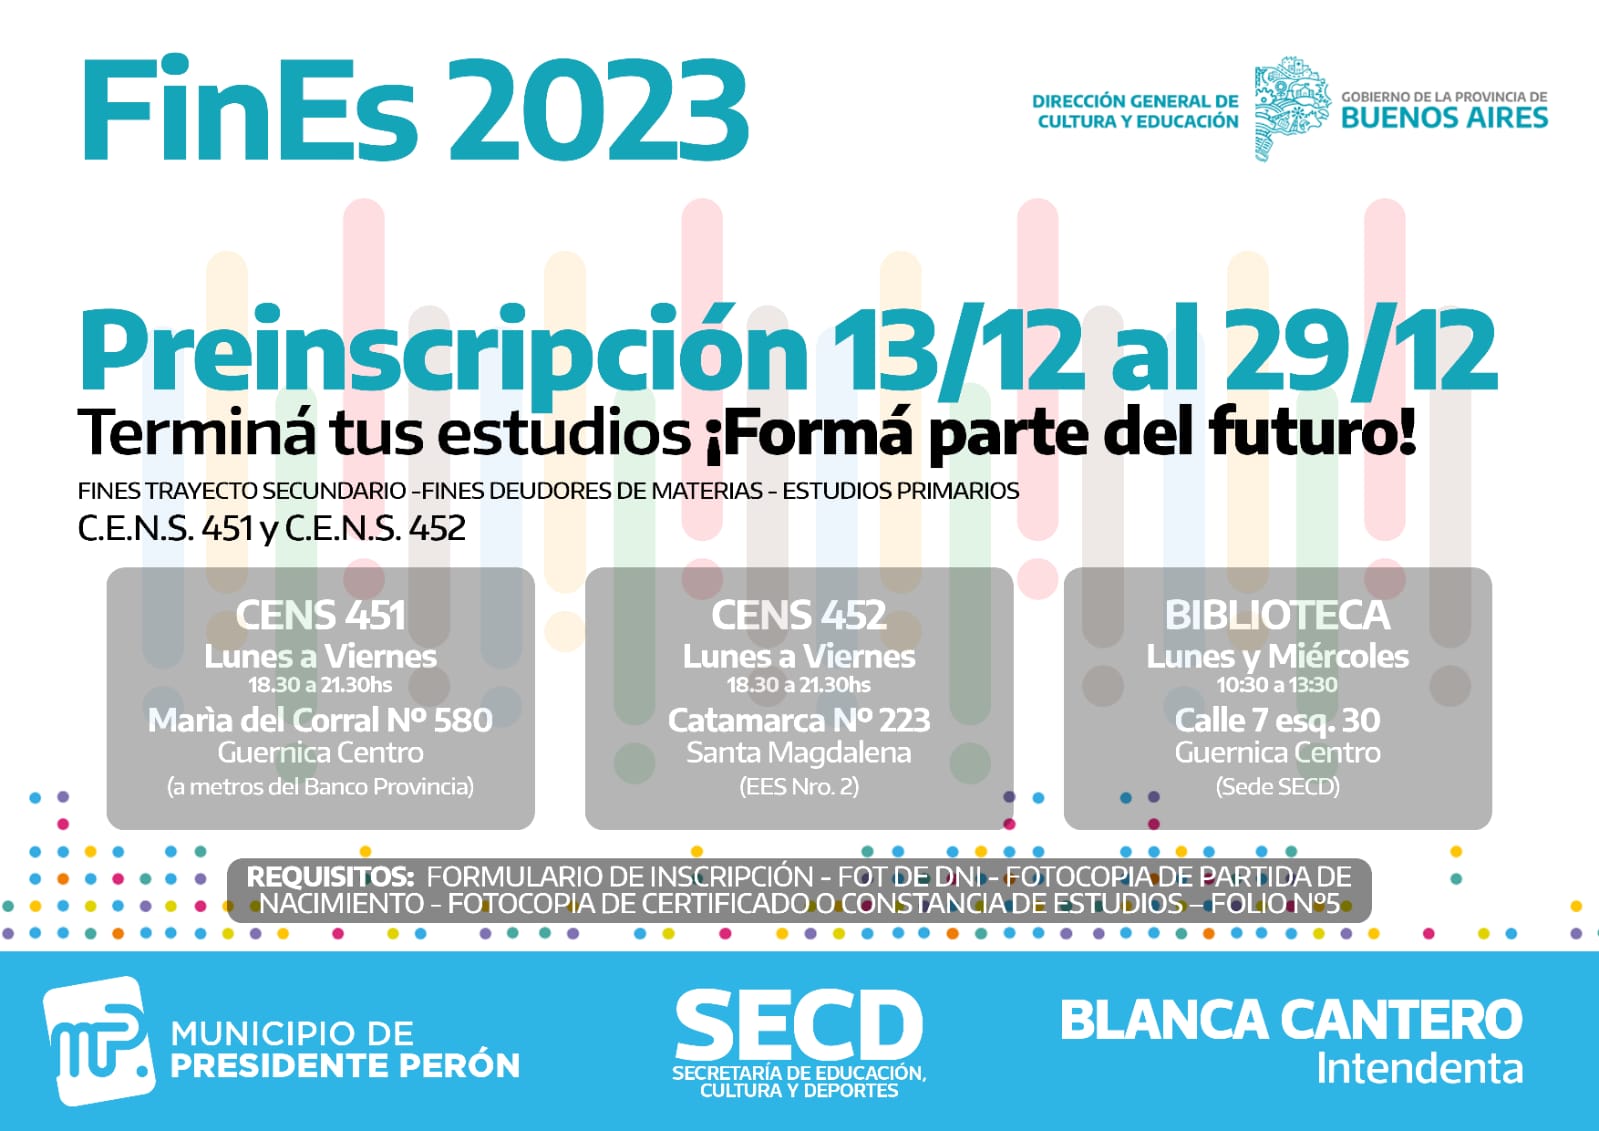 EDUCACIÓN / COMENZÓ LA INSCRIPCIÓN AL PROGRAMA FINES 2023